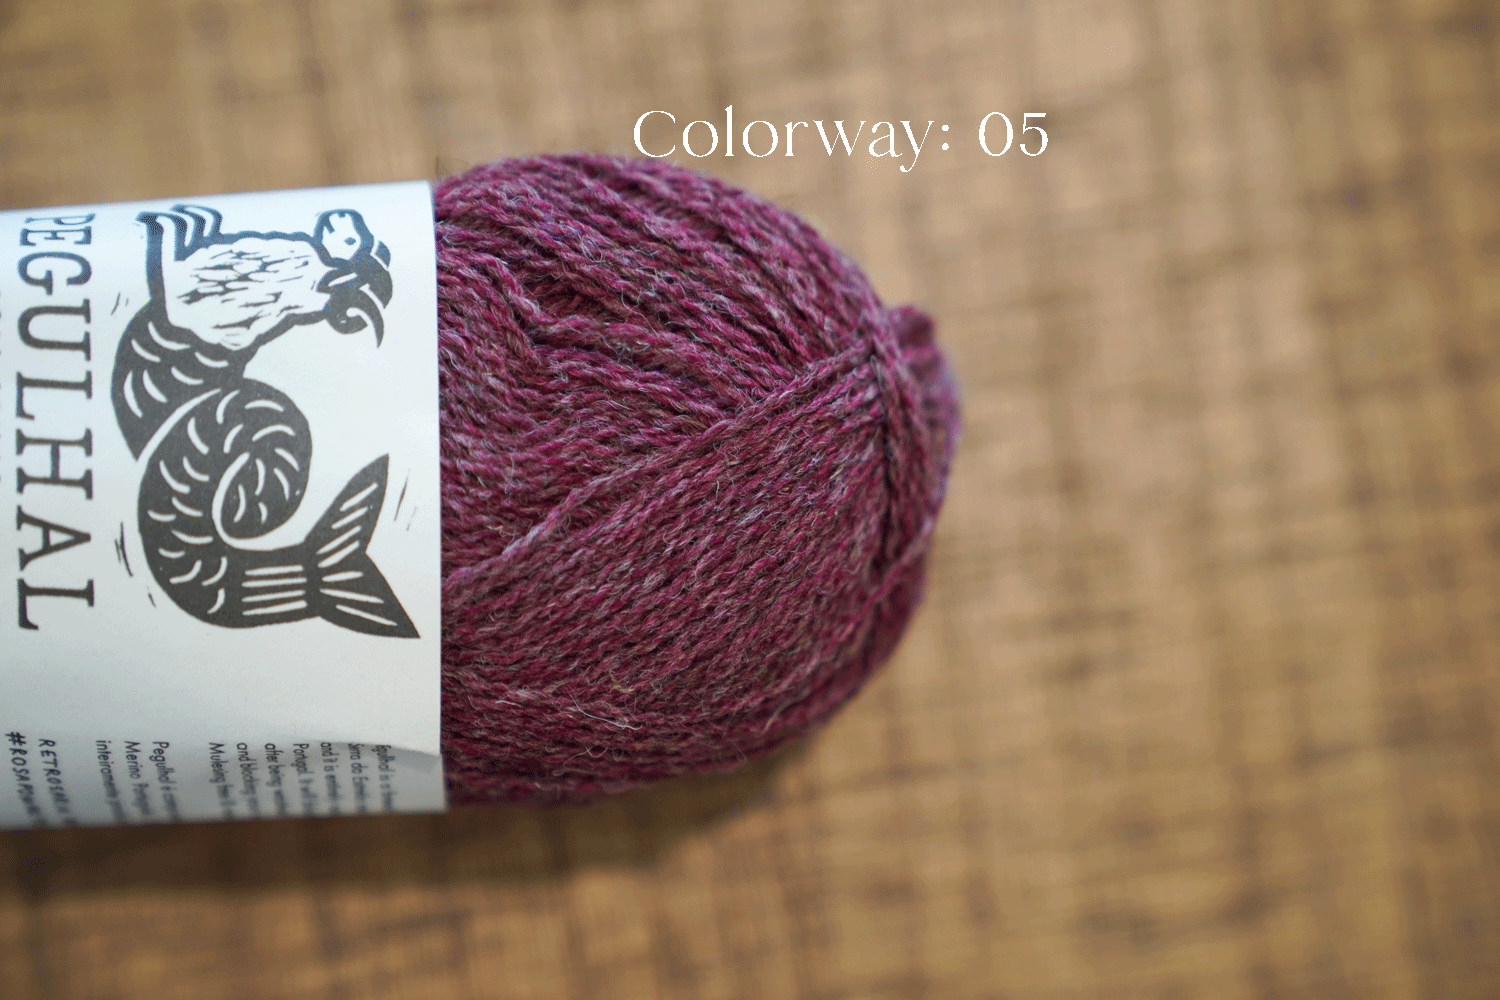 Scheepjes Burlesque Yarn (Mohair Wool Acrylic) Teal Blue 49 Holland  160m/50g